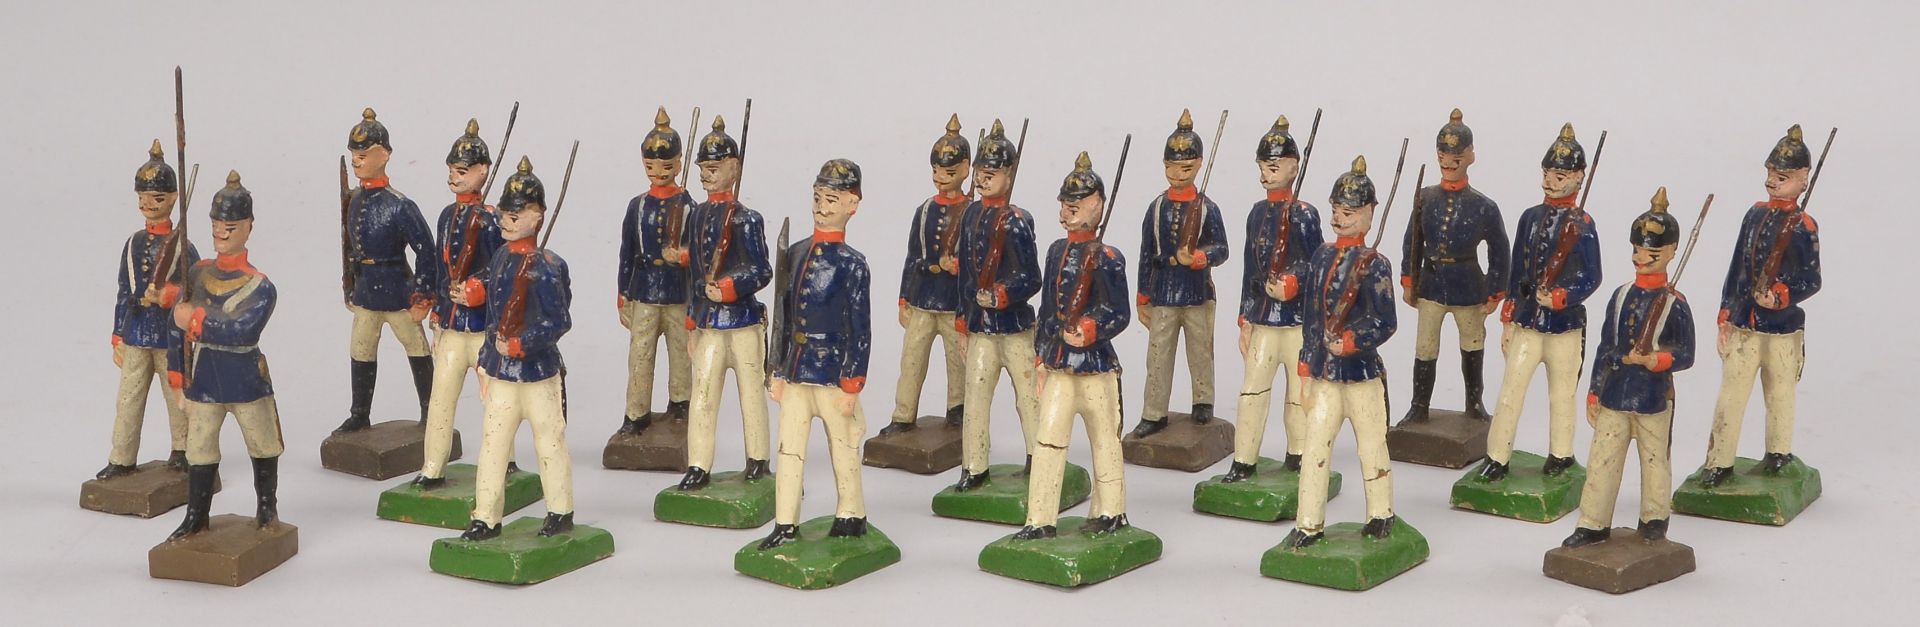 Kleine Soldatenfiguren-Sammlung (I. WK), -Infanterie-, Figuren teils Holz/teils Lineol, jeweils farb